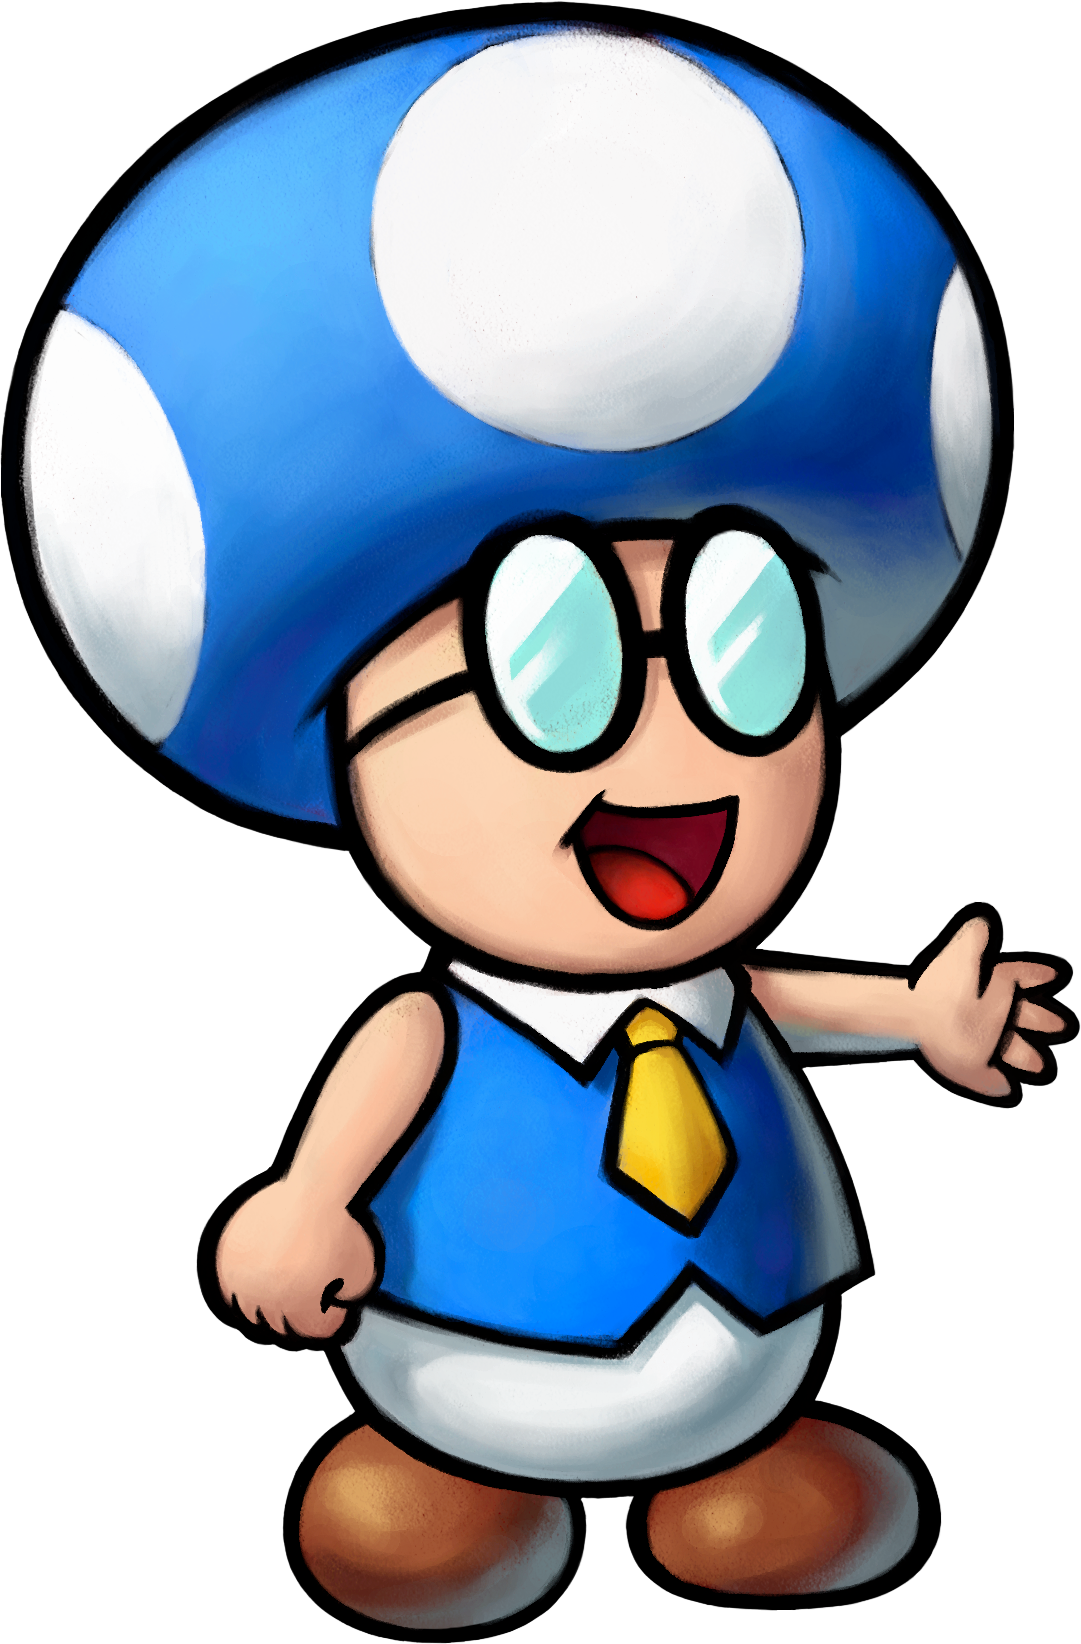 Toad Town - Super Mario Wiki, the Mario encyclopedia